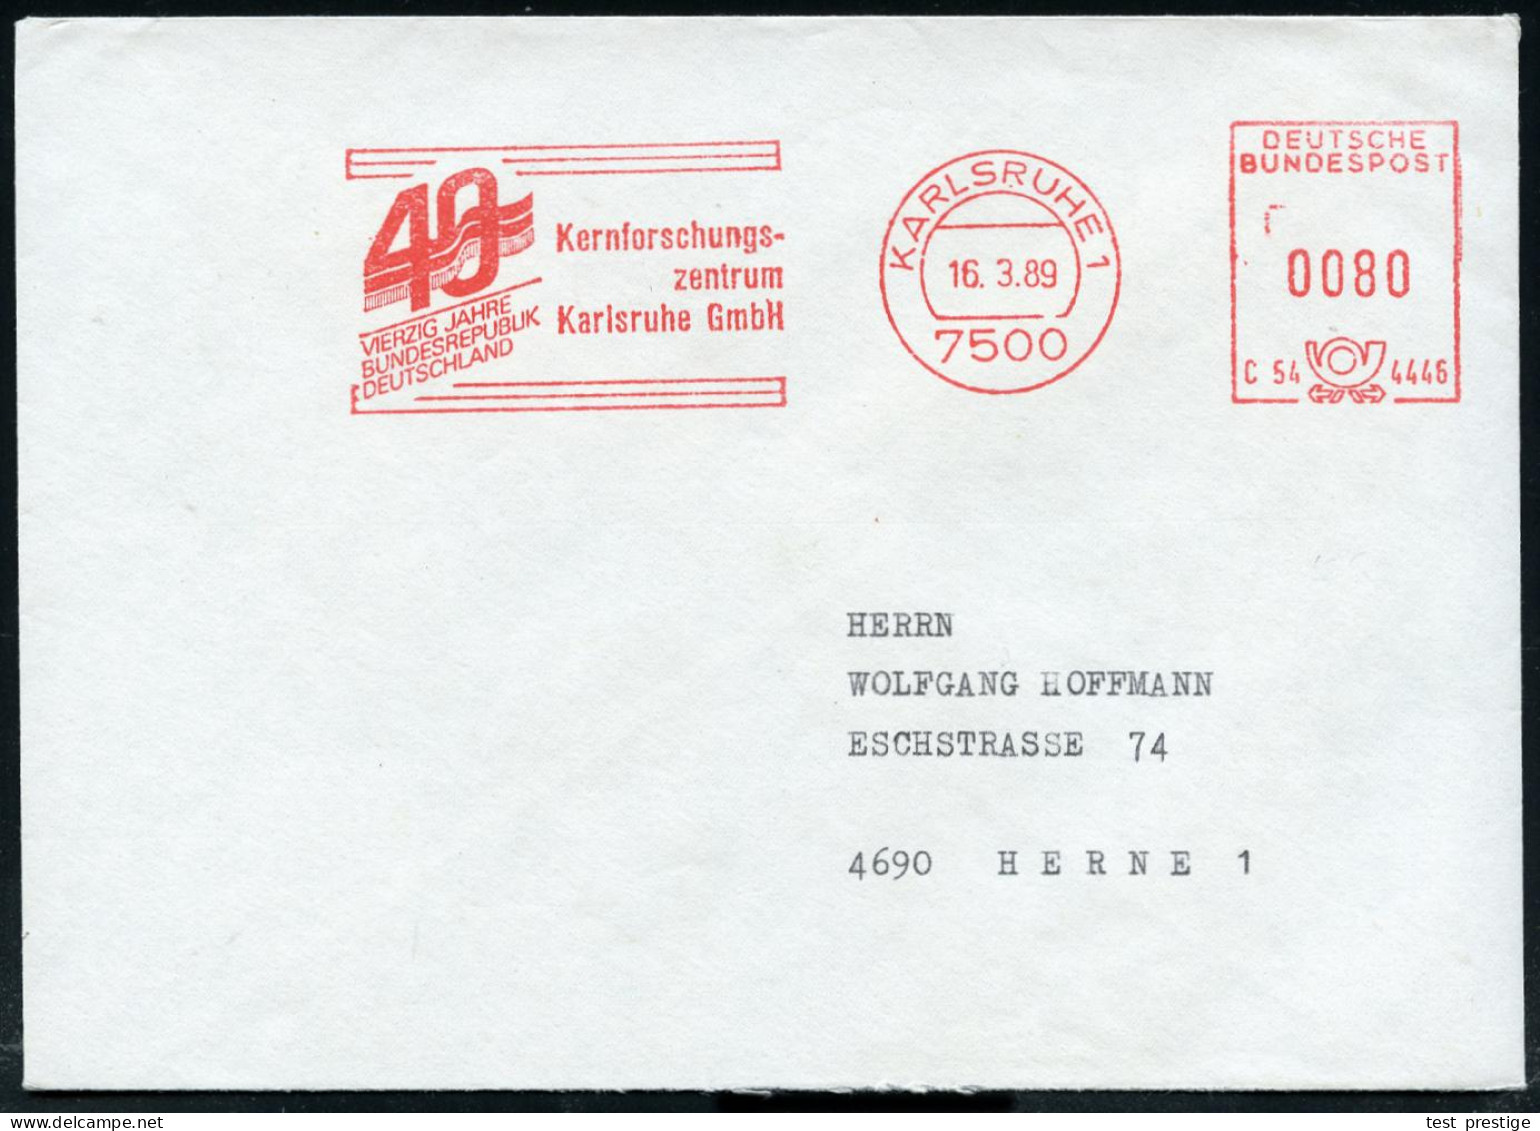 7500 KARLSRUHE 1/ C54 4446/ VIERZIG JAHRE/ BRD/ Kernforschungs-/ Zentrum.. 1989 (16,3,) Seltener Jubil.-AFS (Flagge) Kla - Atomenergie